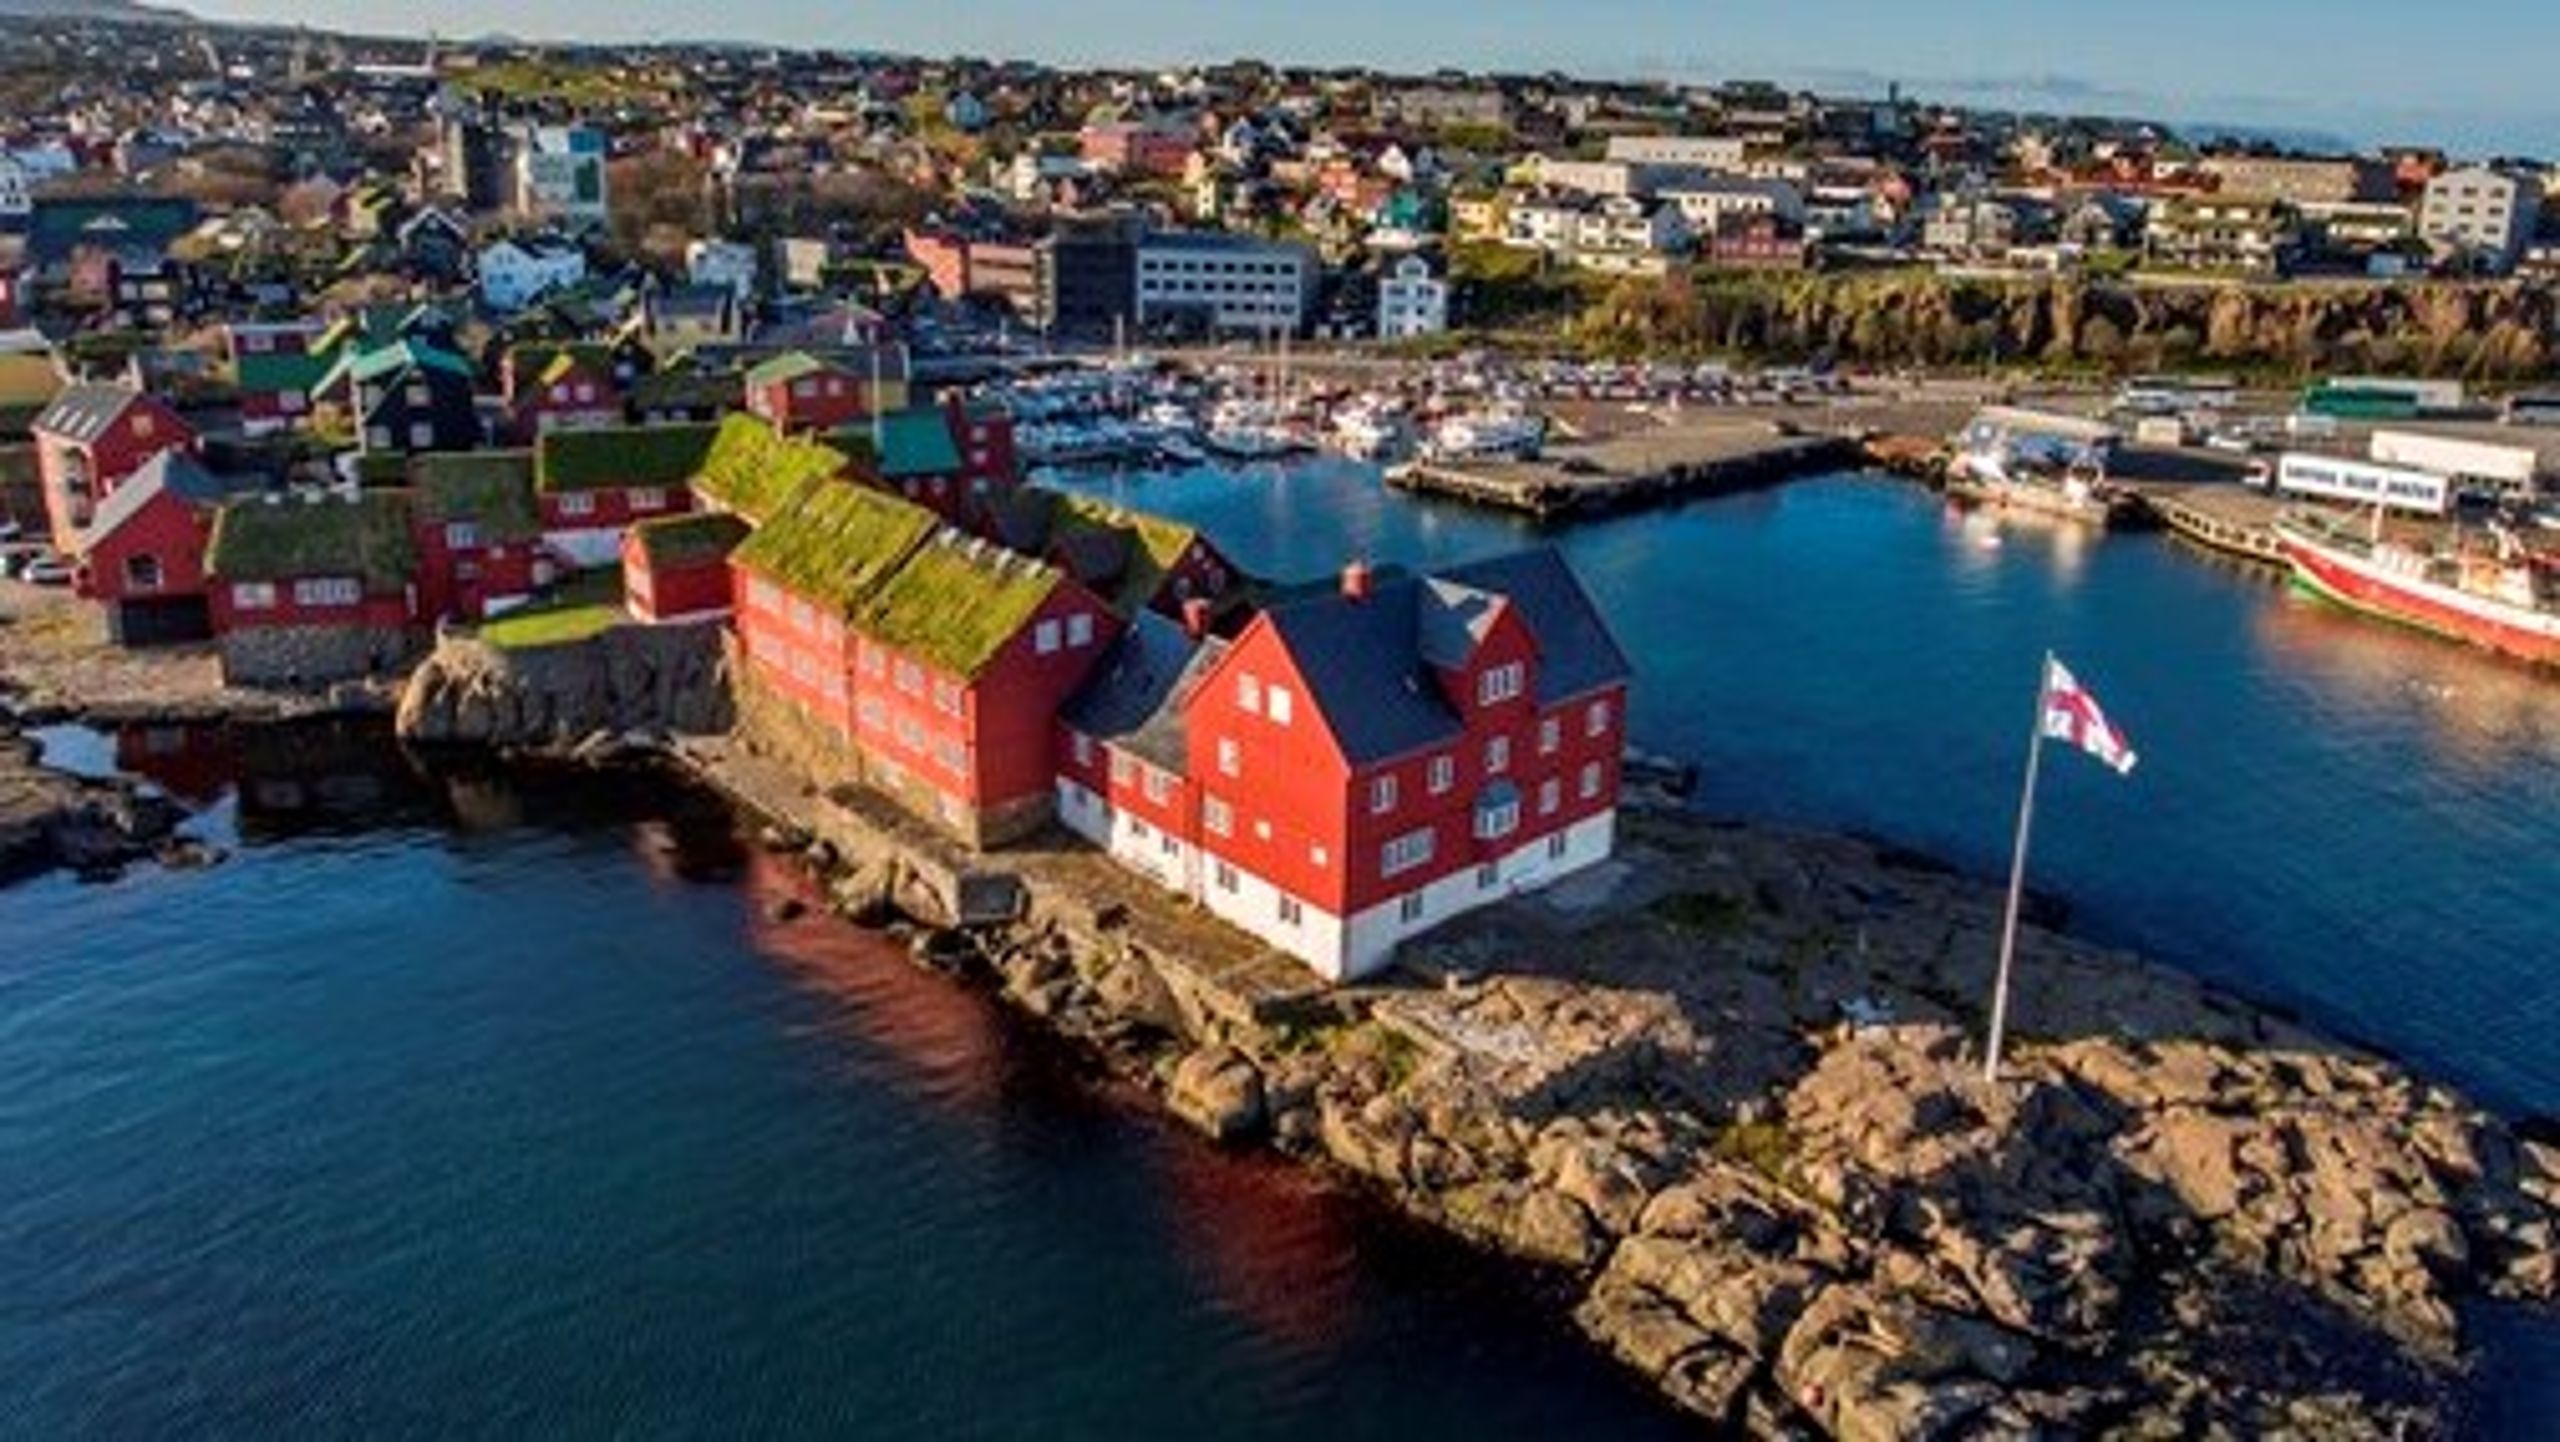 Det færøske lagting og landsstyreadministration ligger på halvøen Tinganes i havnen i Tórshavn.